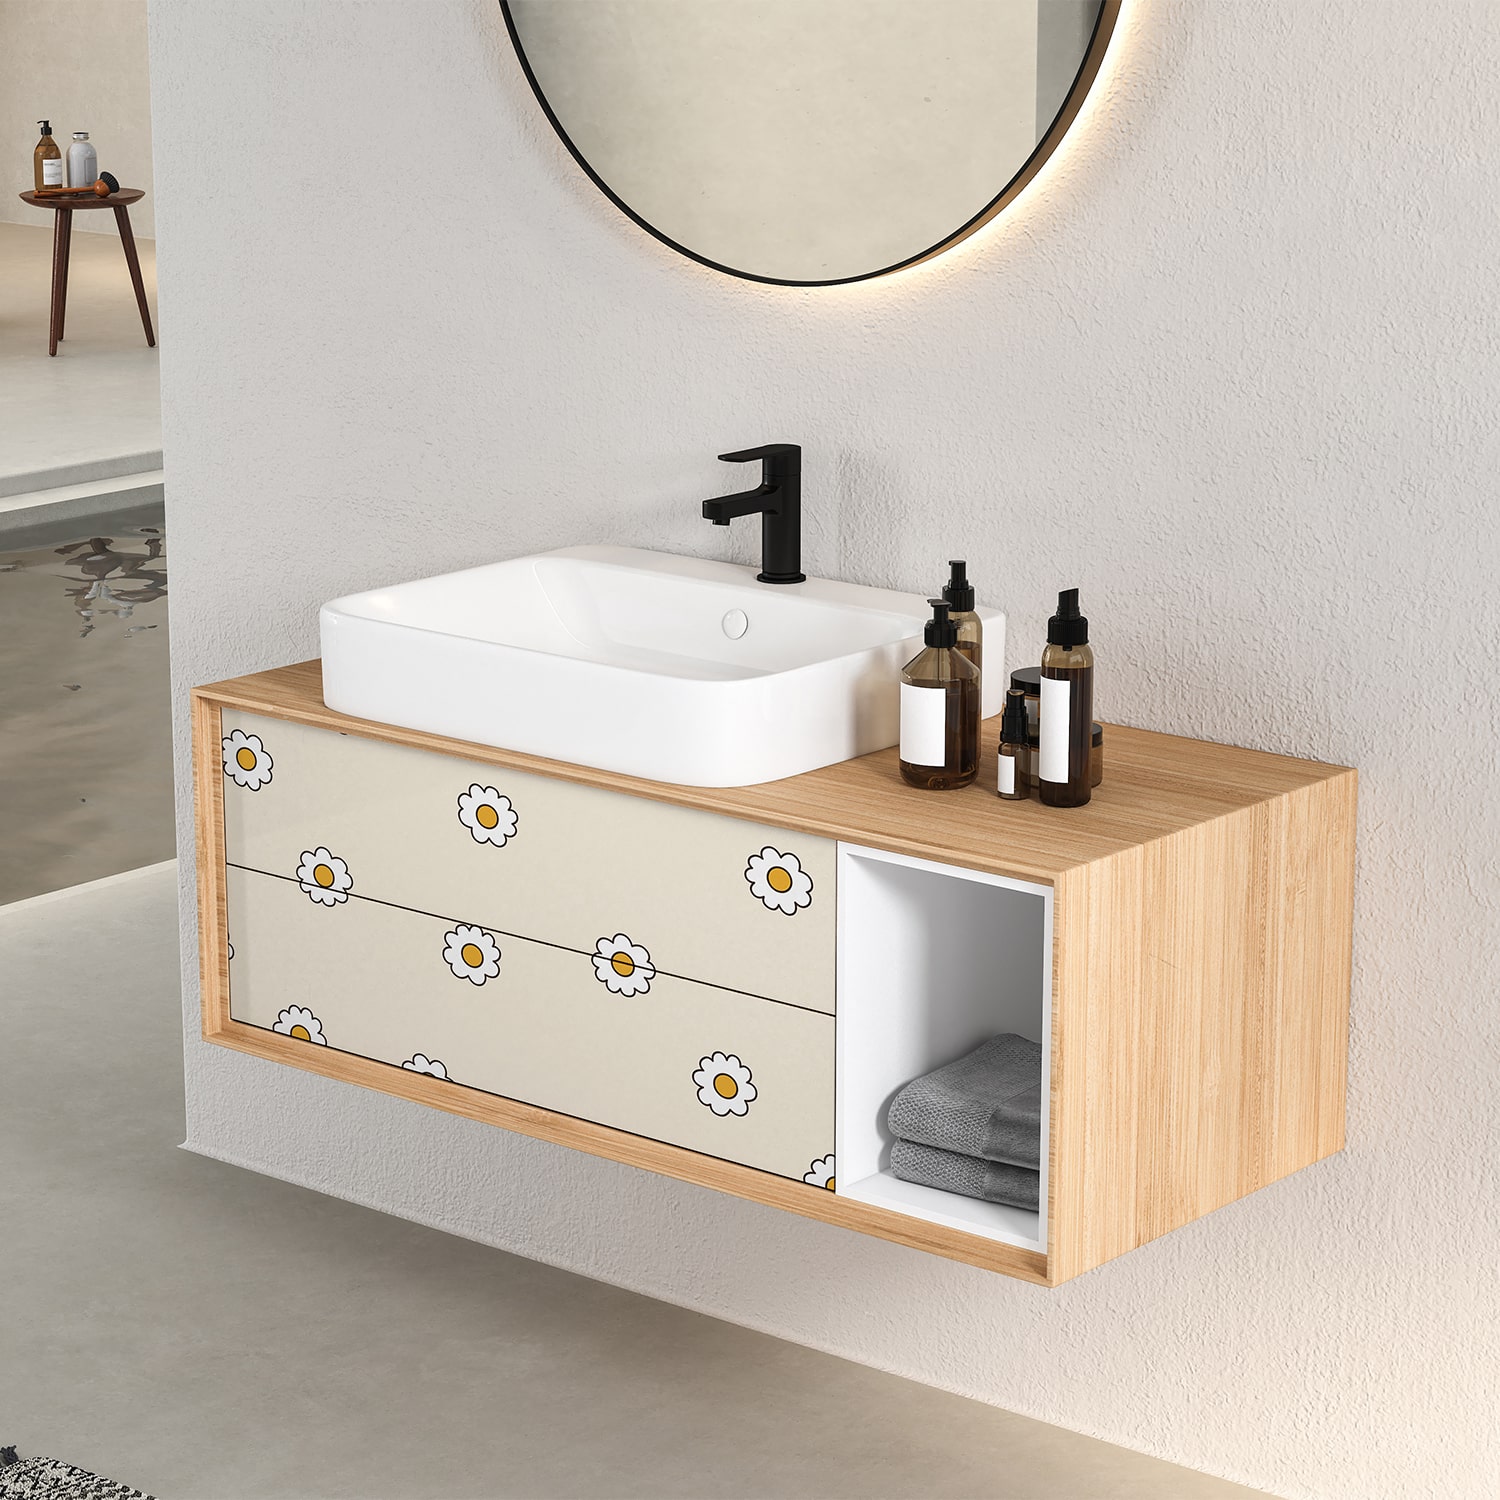 PP109-meuble-papier-peint-adhesif-decoratif-revetement-vinyle-motifs-marguerite-fond-beige-renovation-meuble-mur-min